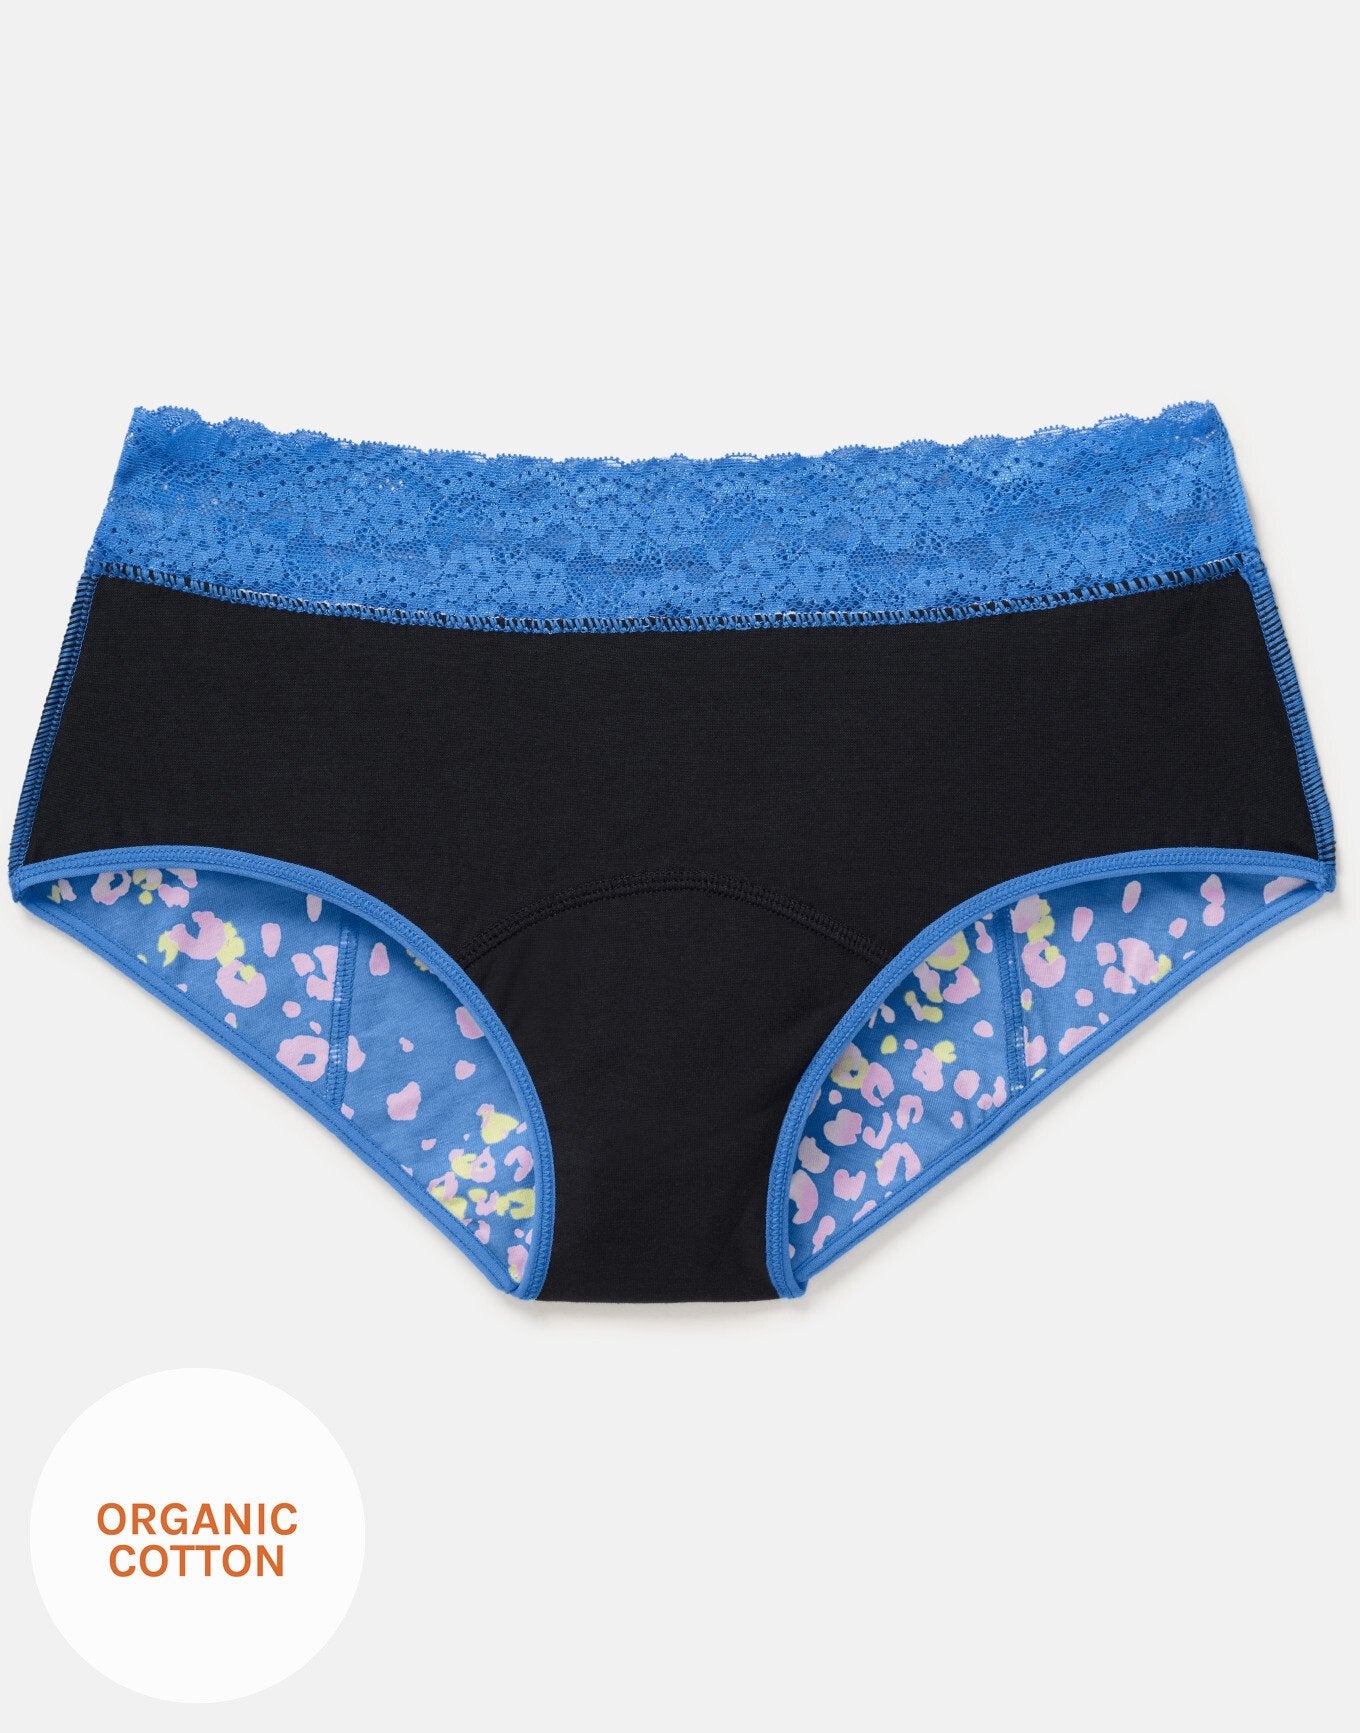 Joyja Ella period-proof panty in color Jungle Confetti C01 and shape midi brief